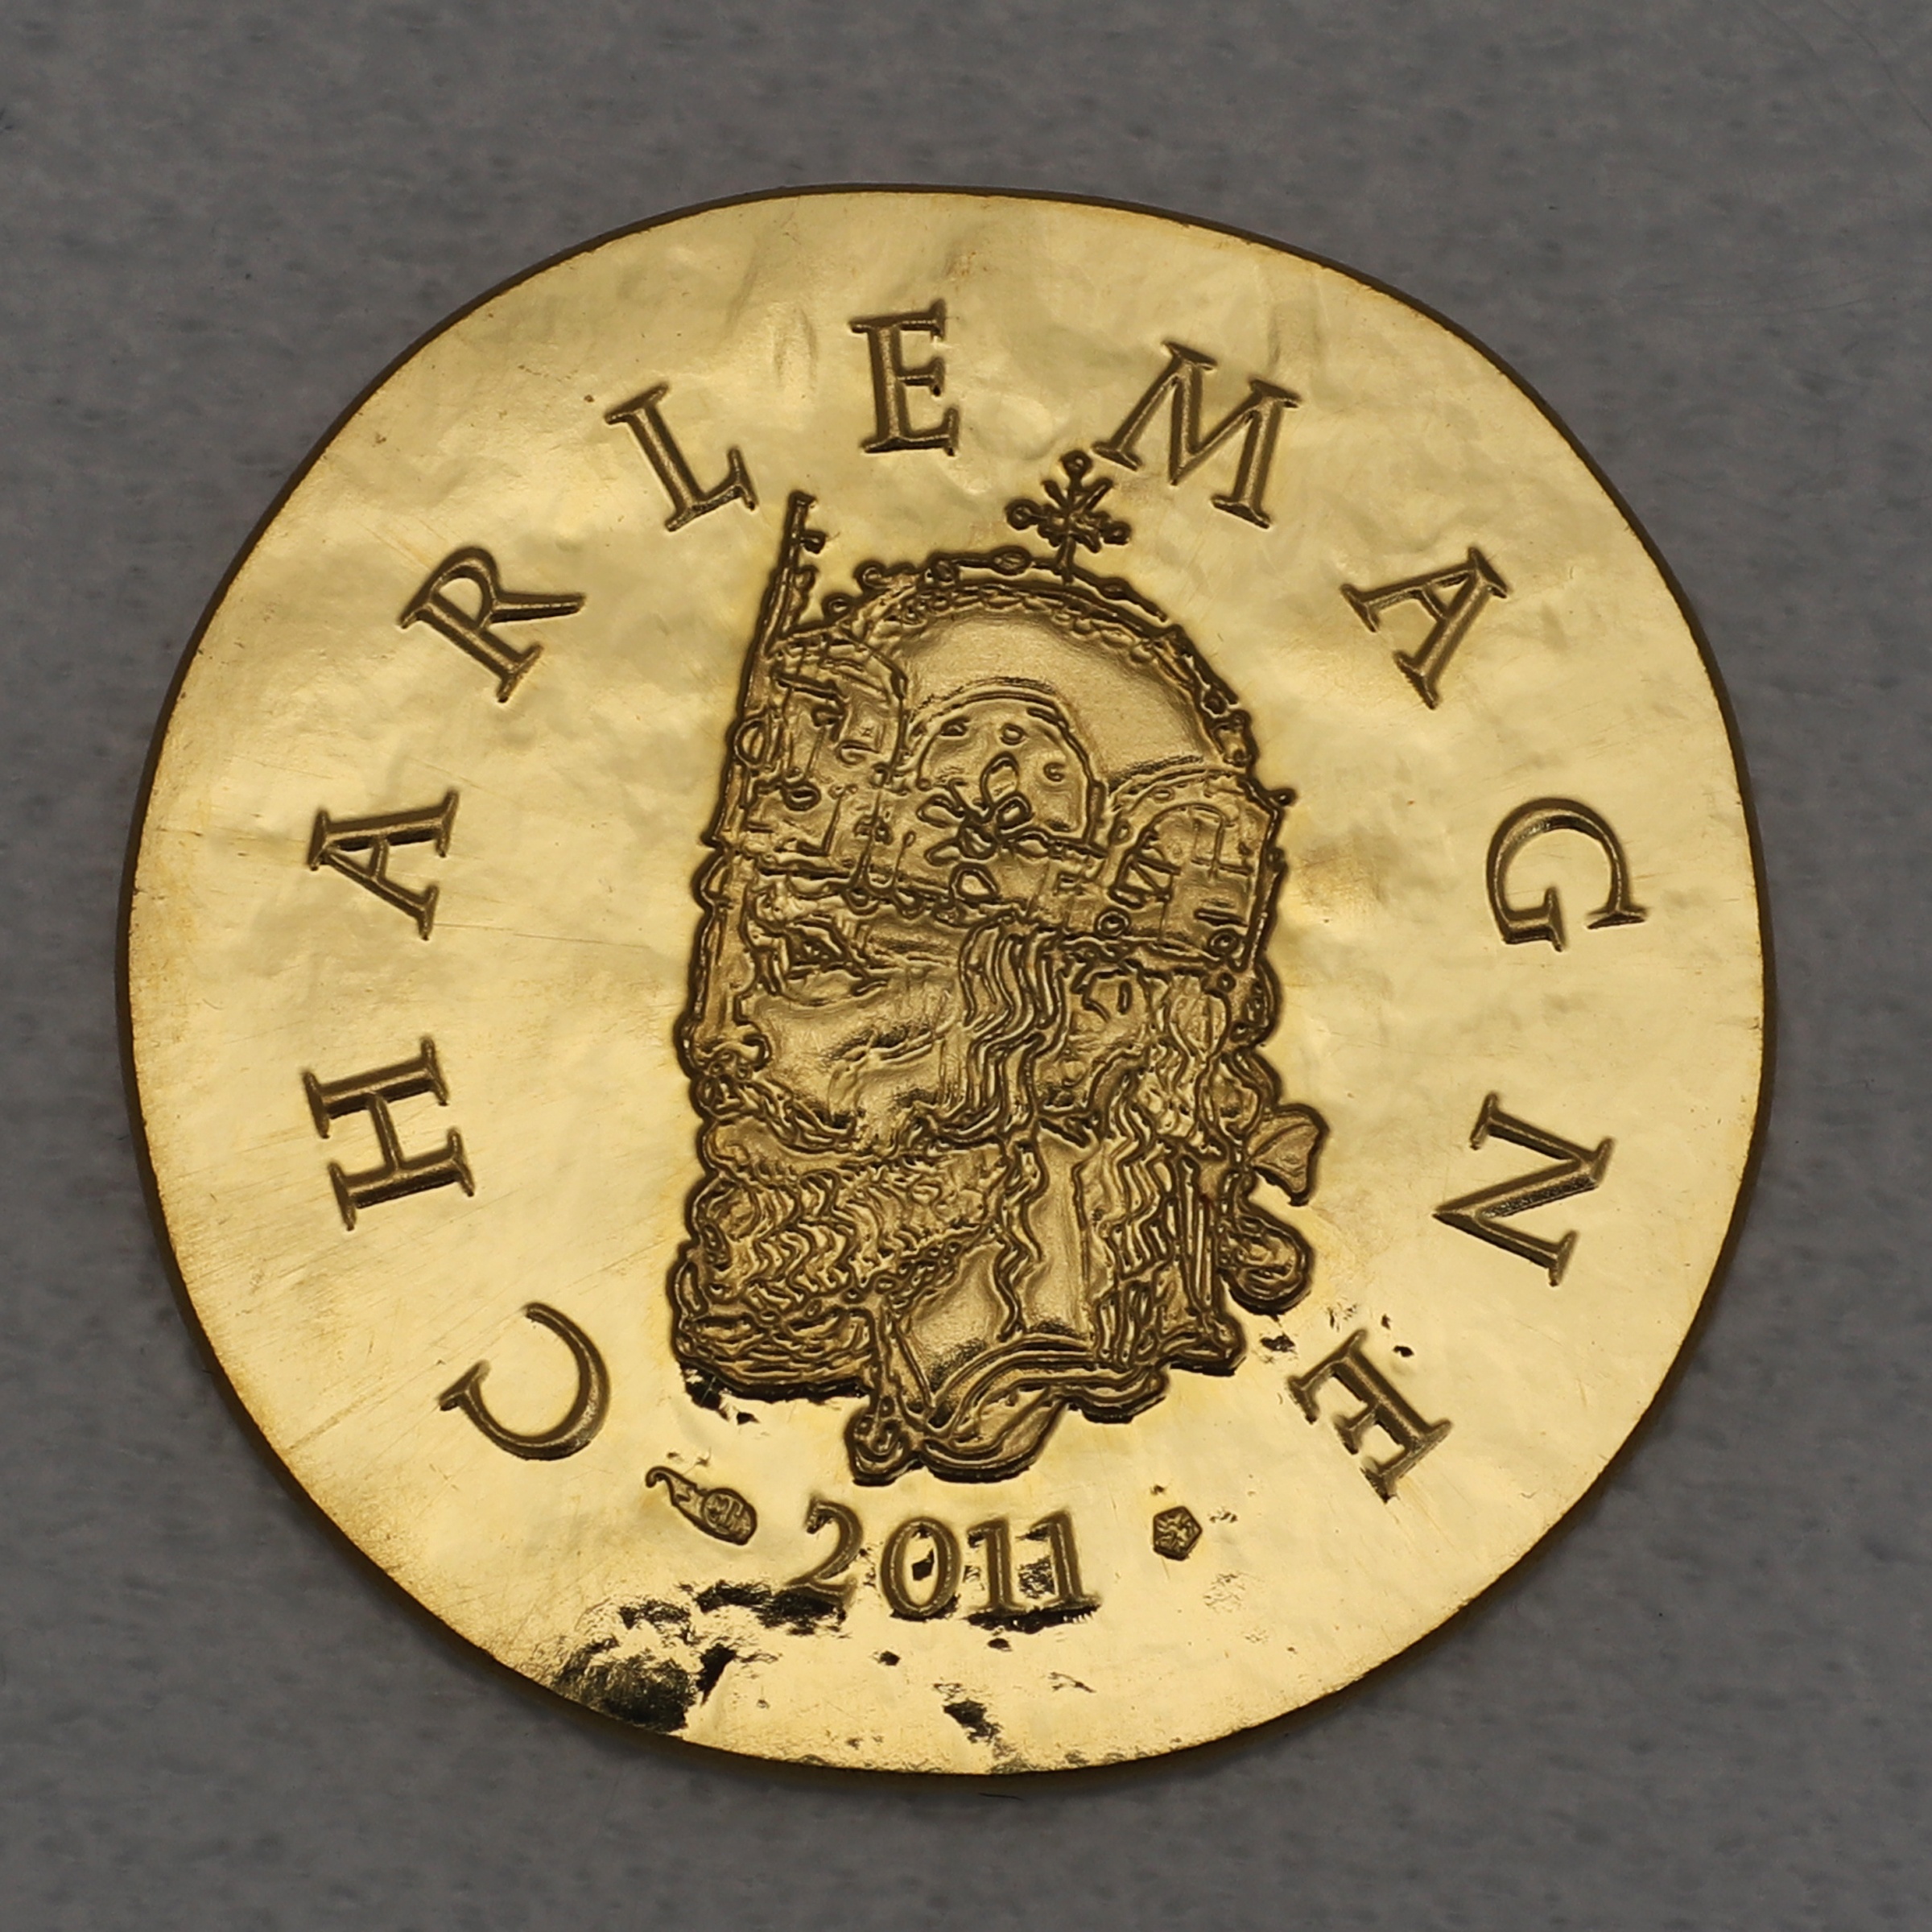 Goldmünze 50 Euro Charlemagne 2011 (Frankreich)